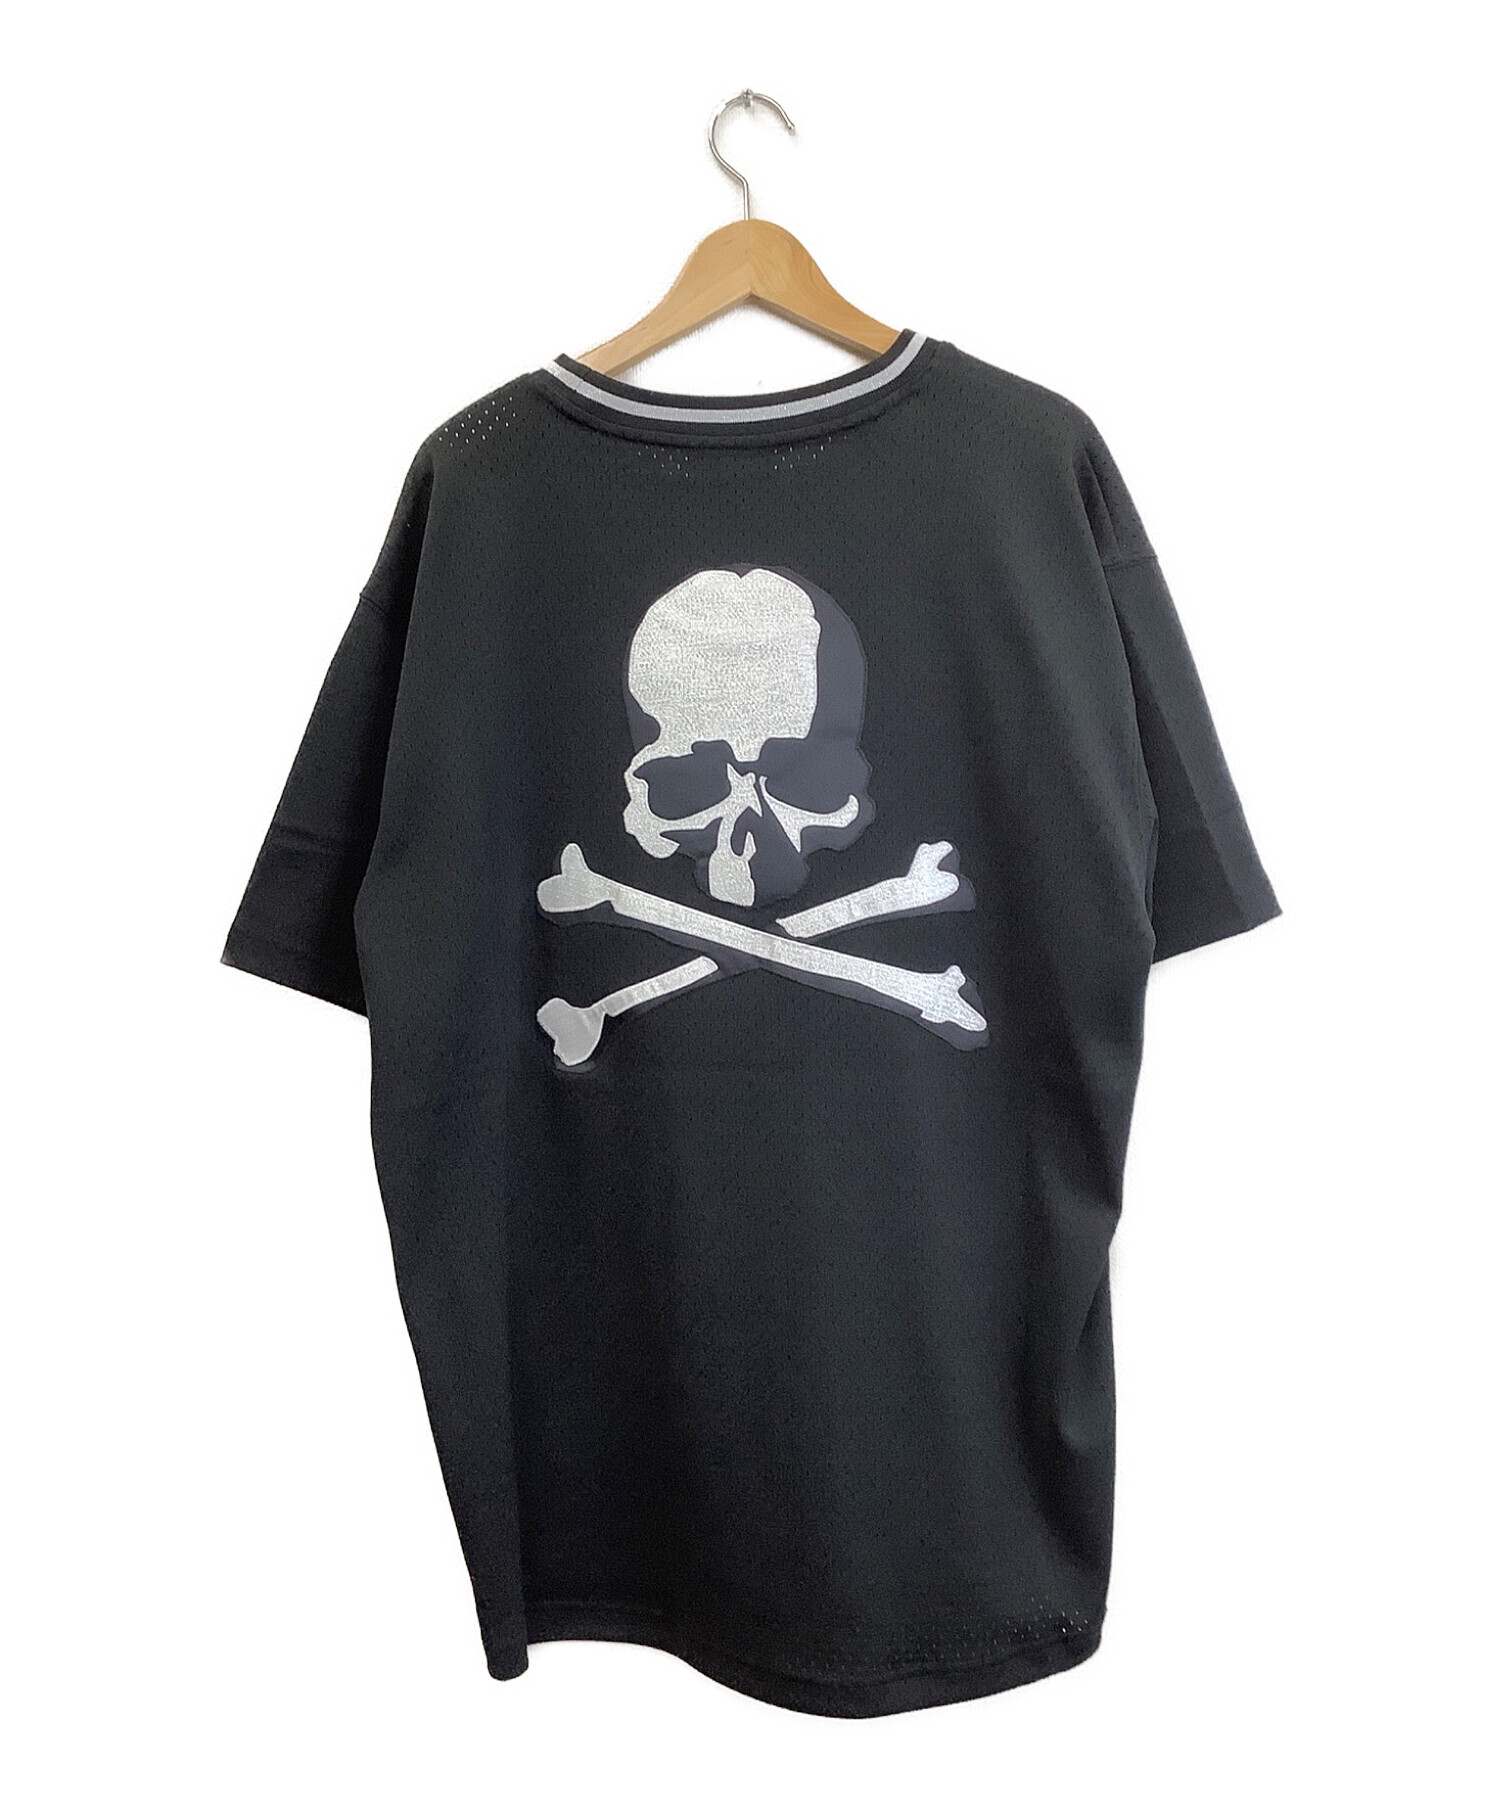 mastermind japan×mitchell & ness (マスターマインド ジャパン) ベースボールシャツ ブラック×ホワイト サイズ:XL  未使用品